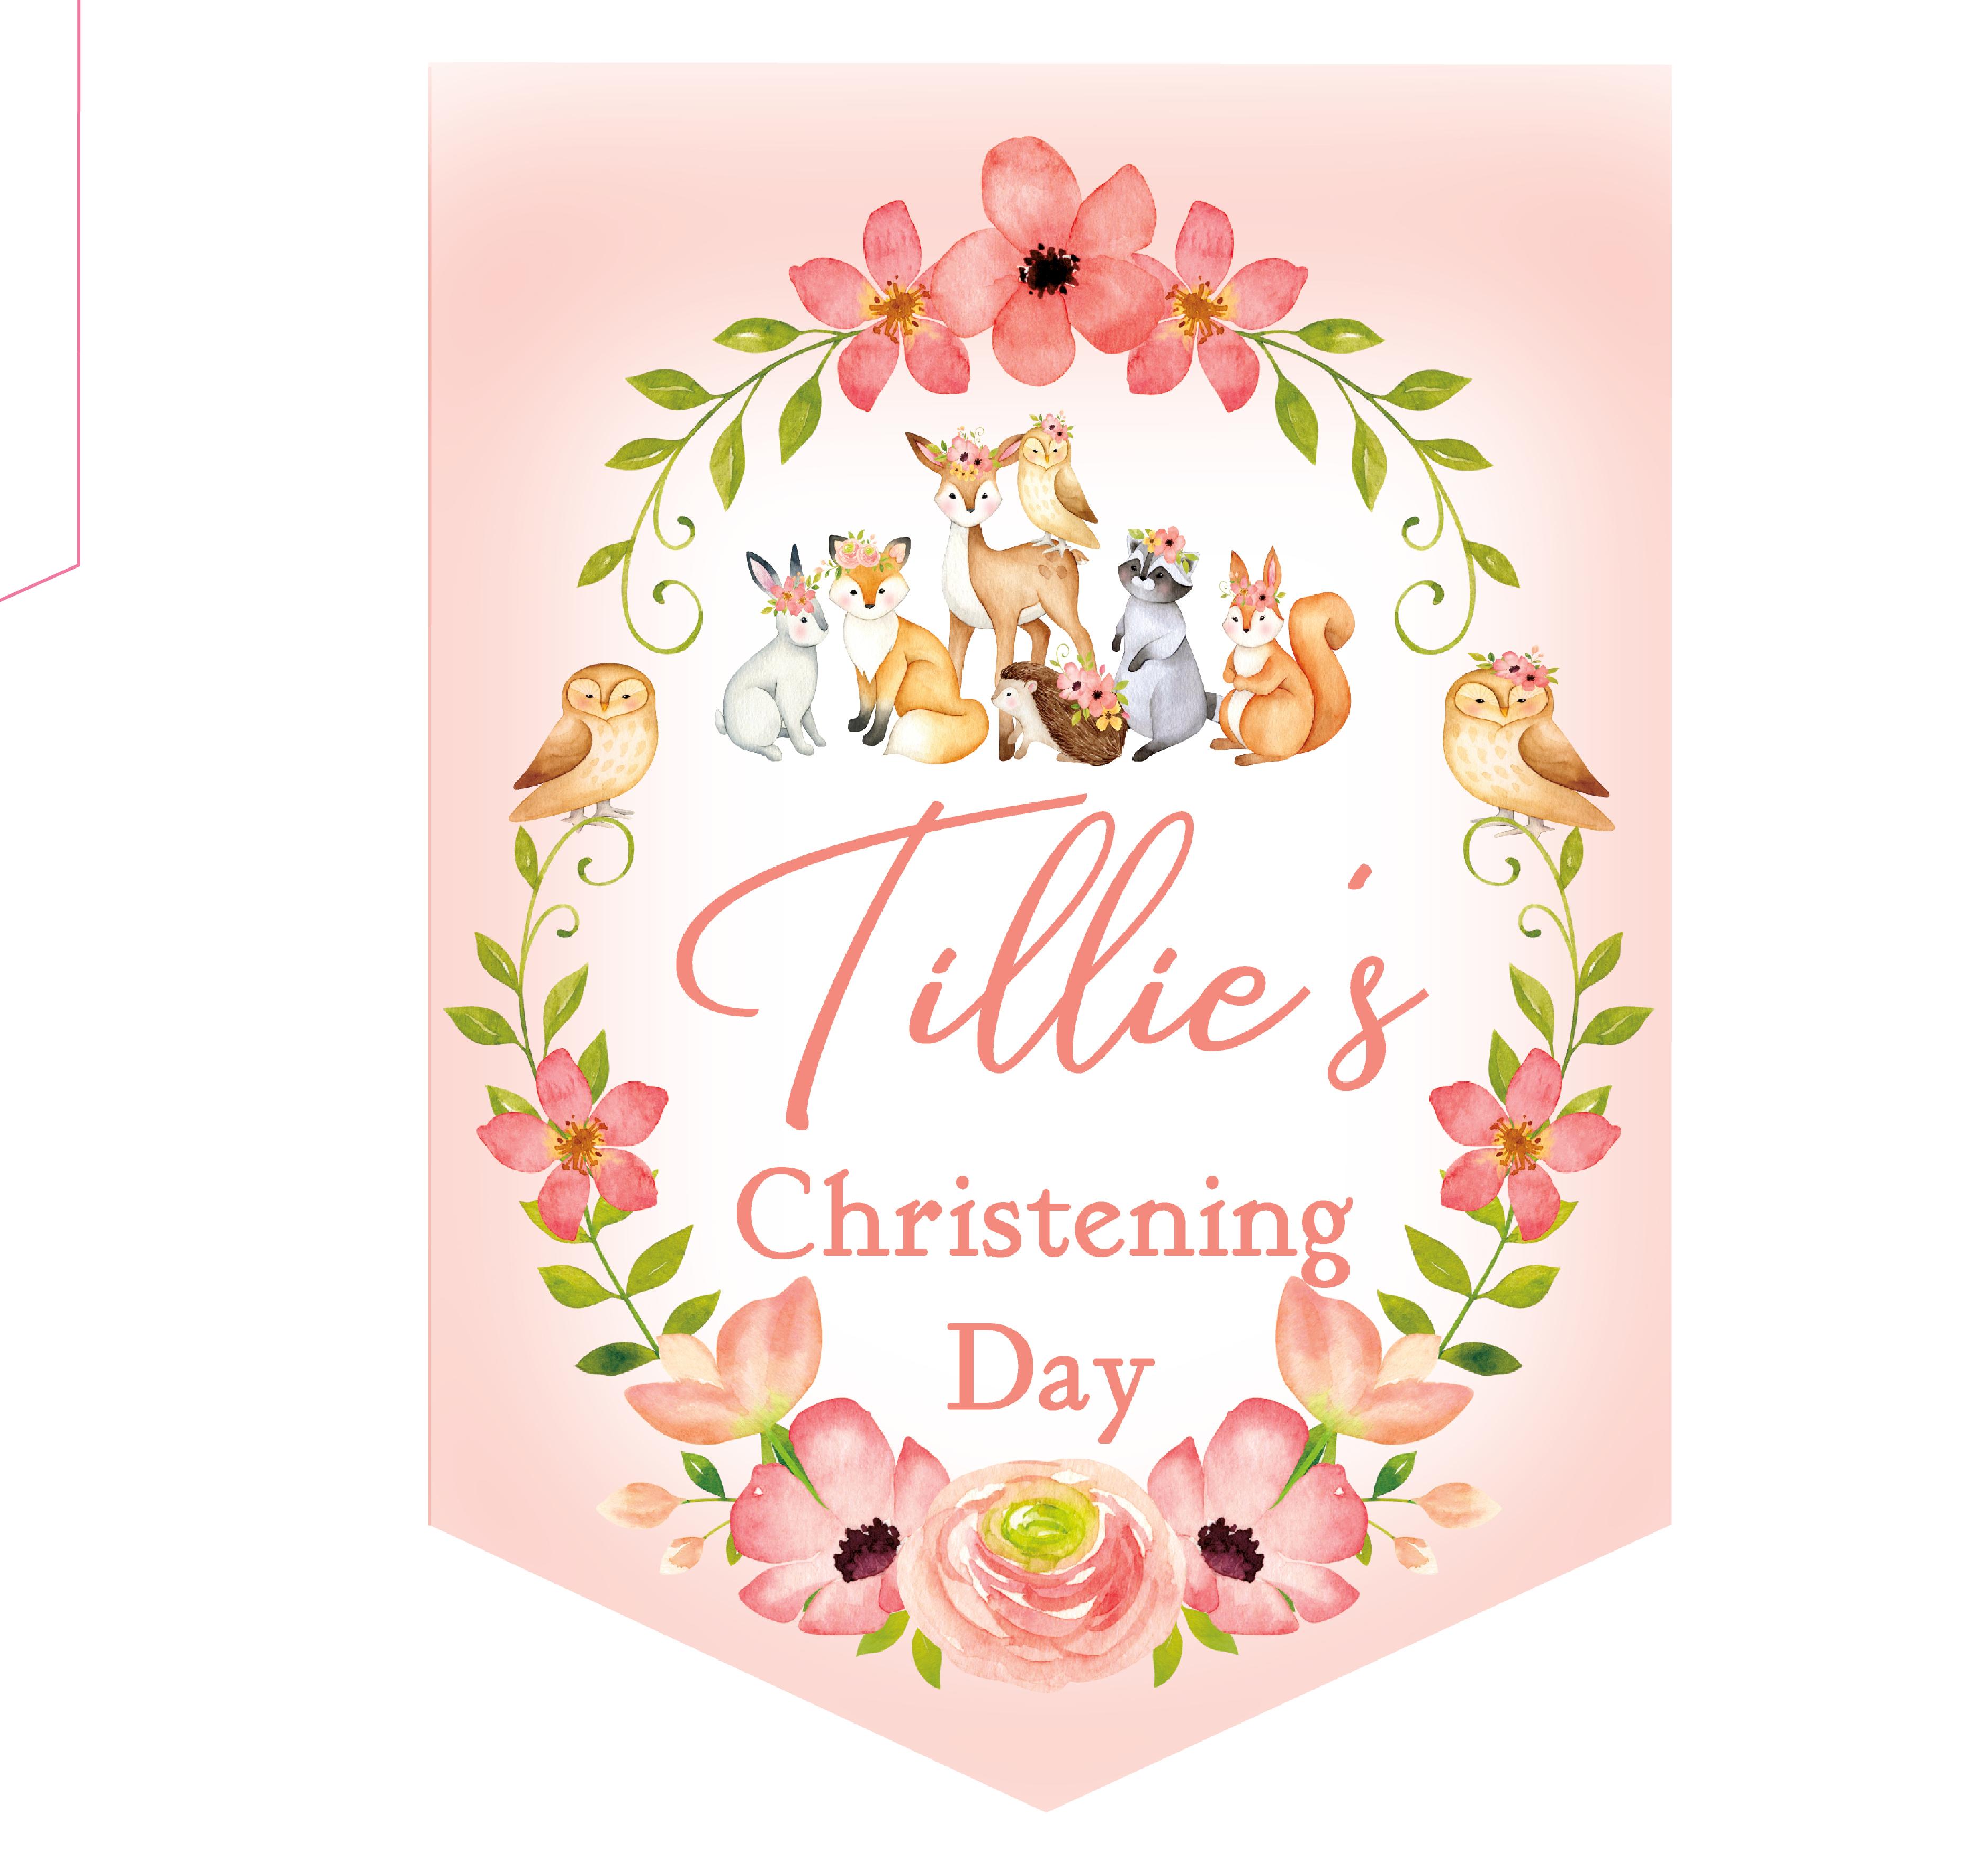 Christening Day Bunting,Christening Banner,Girls Christening Day Bunting,Woodland Animals